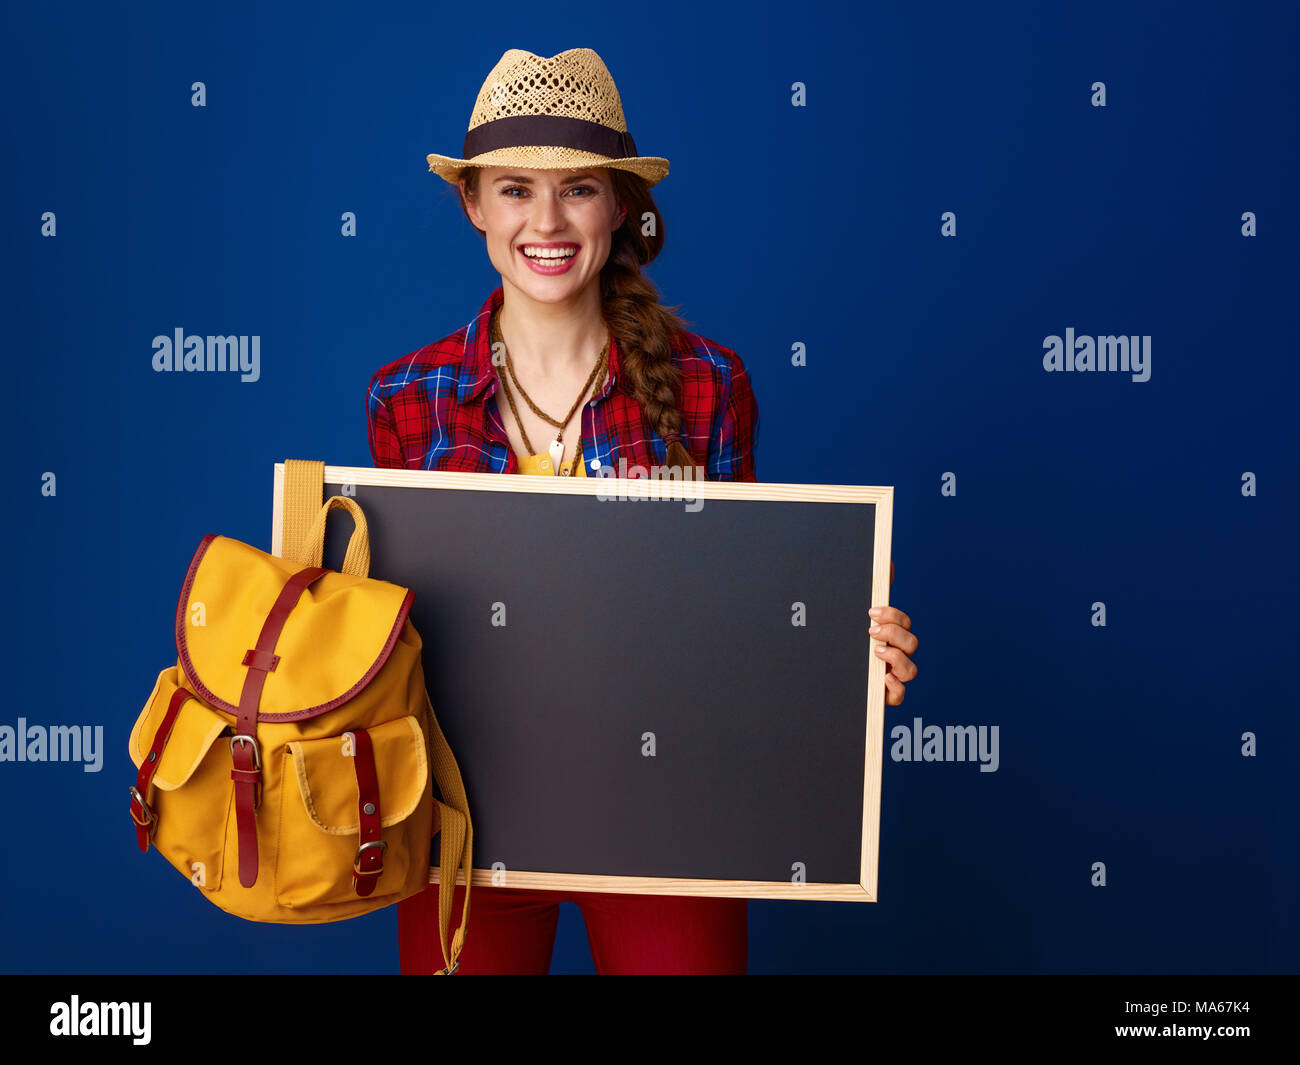 Auf der Suche nach inspirierenden Orten. glückliche junge Frau Wanderer in einen Plaid Shirt, Blank Board auf blauem Hintergrund Stockfoto